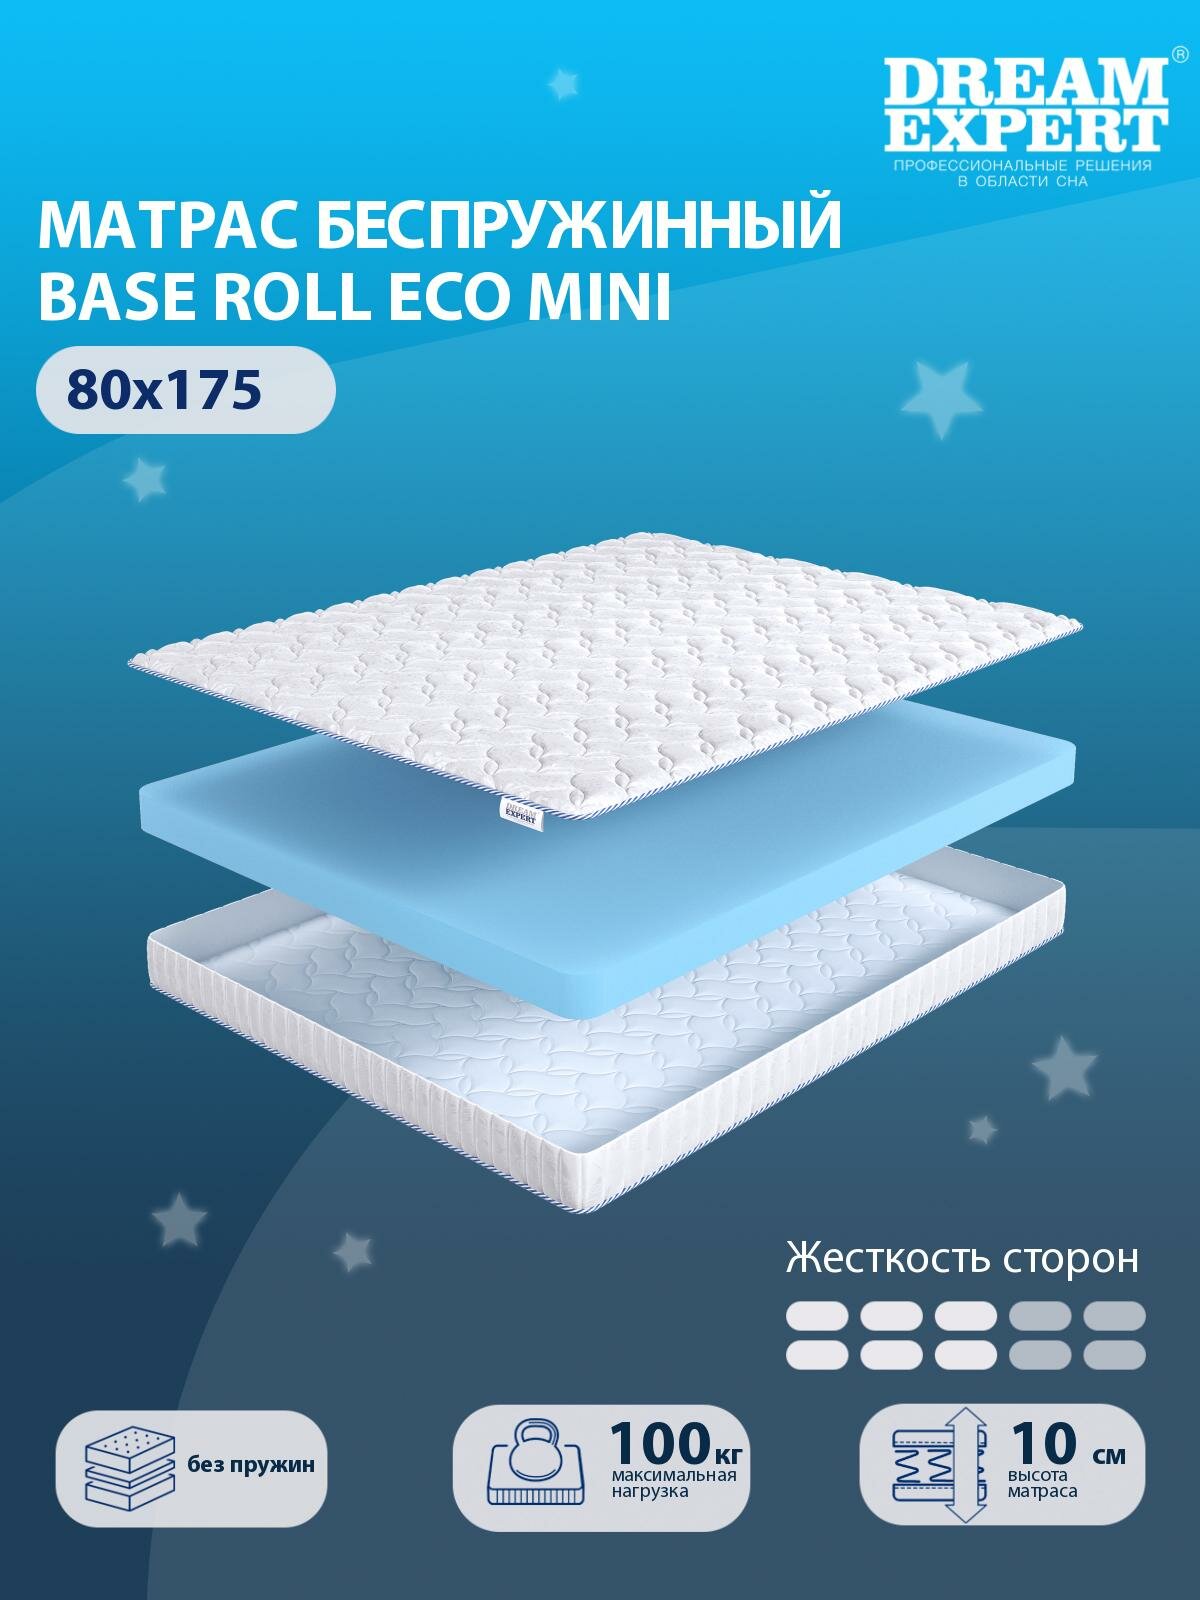 Матрас DreamExpert Base Roll Eco mini средней жесткости, односпальный, беспружинный, на кровать 80x175